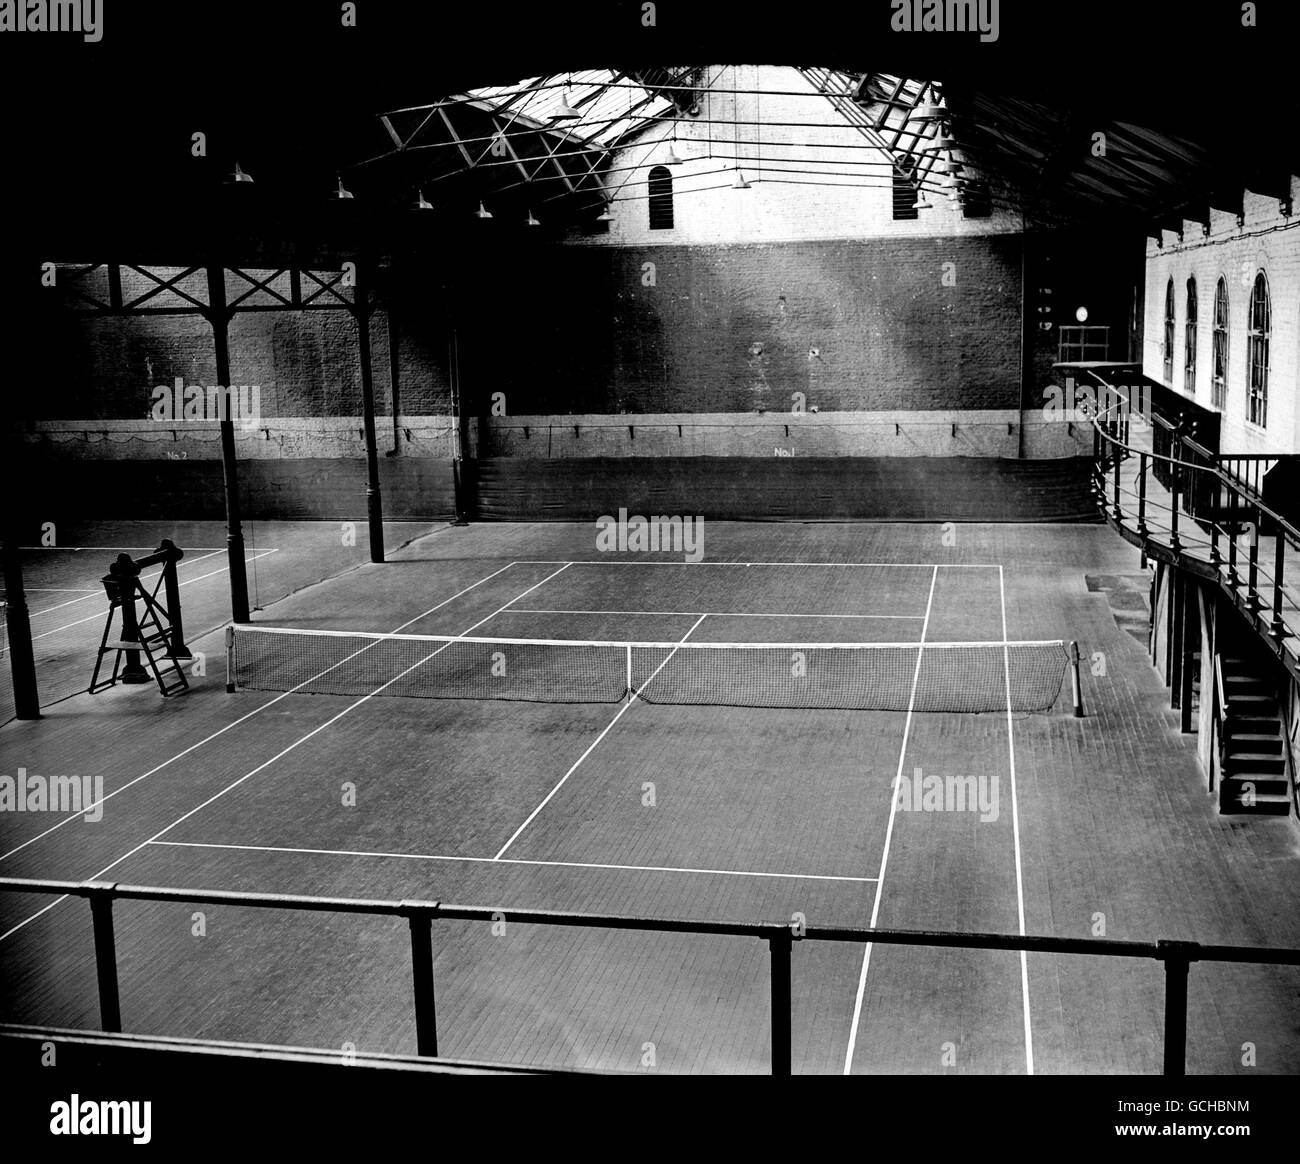 Tennis - la série "Queen" - Queen's Club.Vue générale sur le court de tennis couvert Banque D'Images